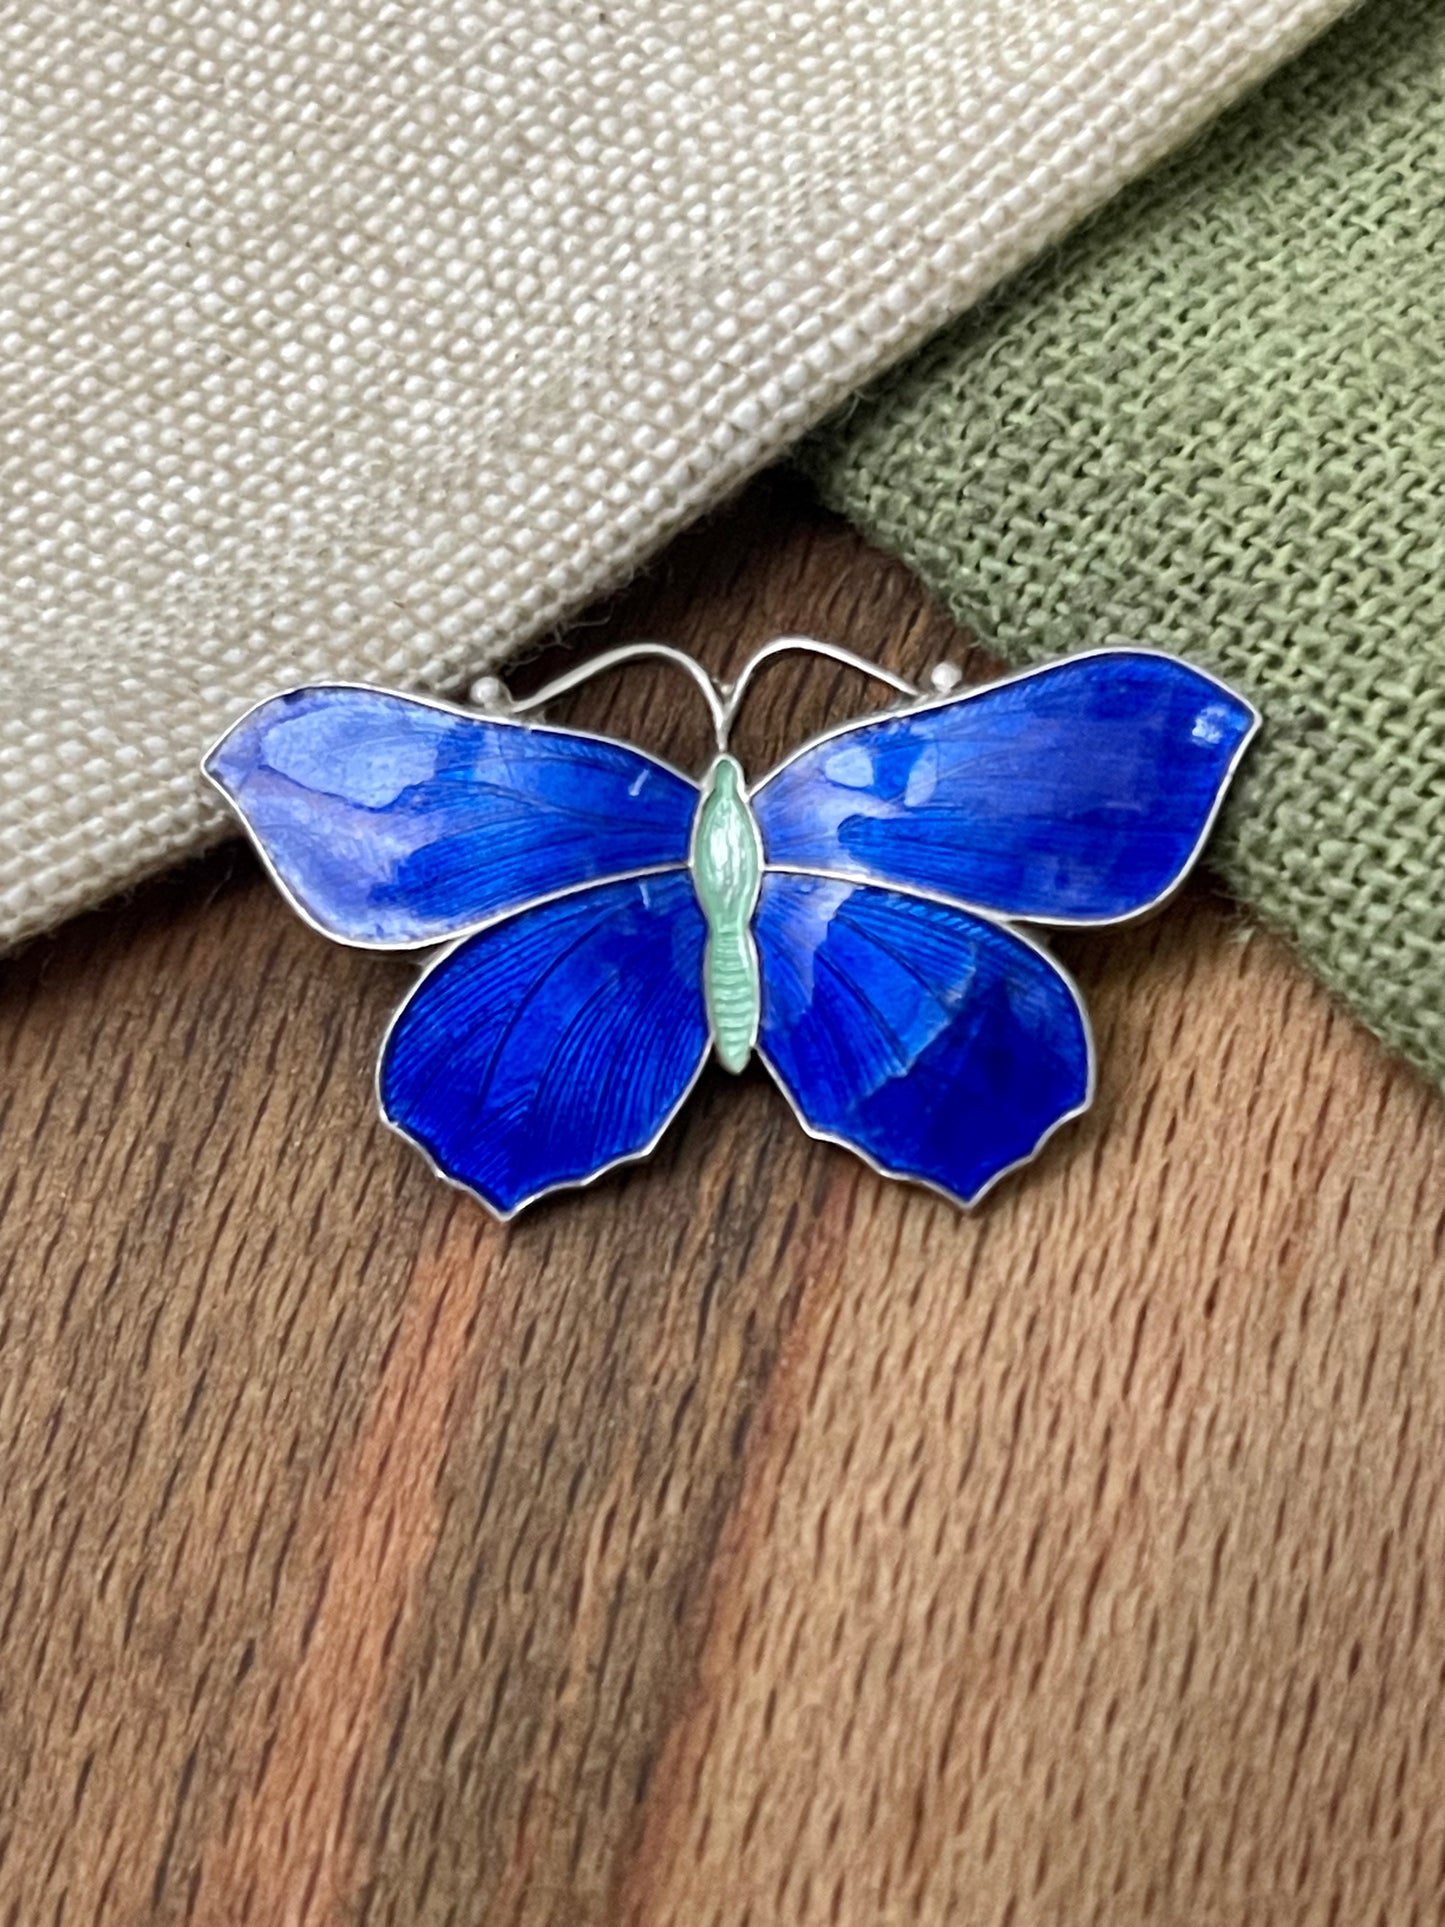 Norwegian Blue Butterfly Brooch Pin Sterling 925 Silver Vintage Retro Jewelry